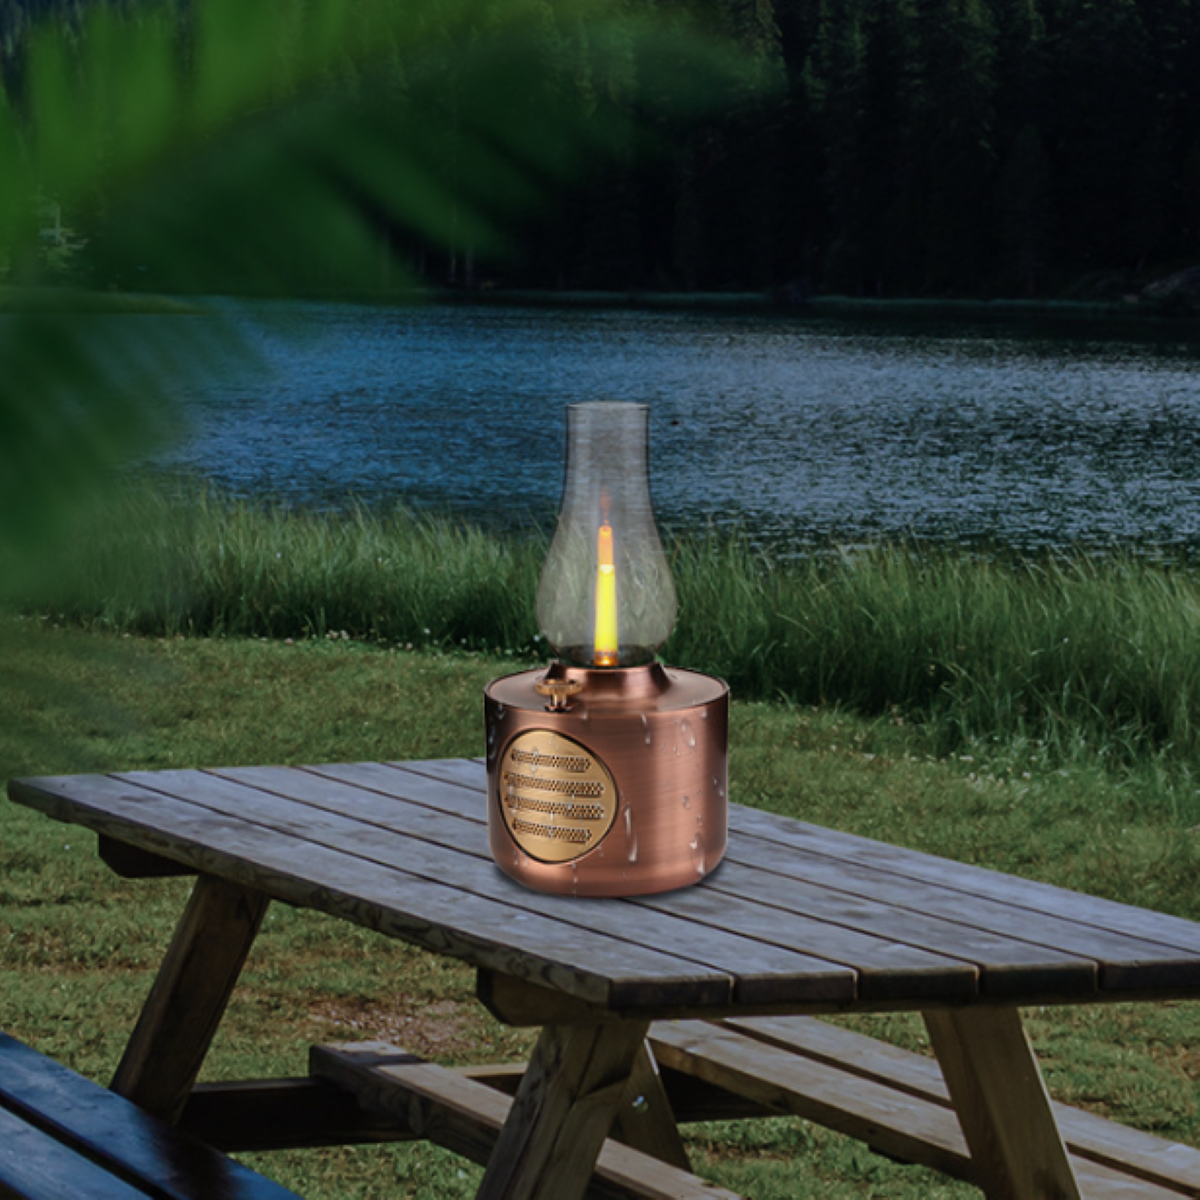 ENBAOXIN Kerosin bluetooth Lautsprecher - Rötliches Kupfer wasserdicht Simuliertes und spritzwassergeschützt Kerzenlicht, Bluetooth-Lautsprecher